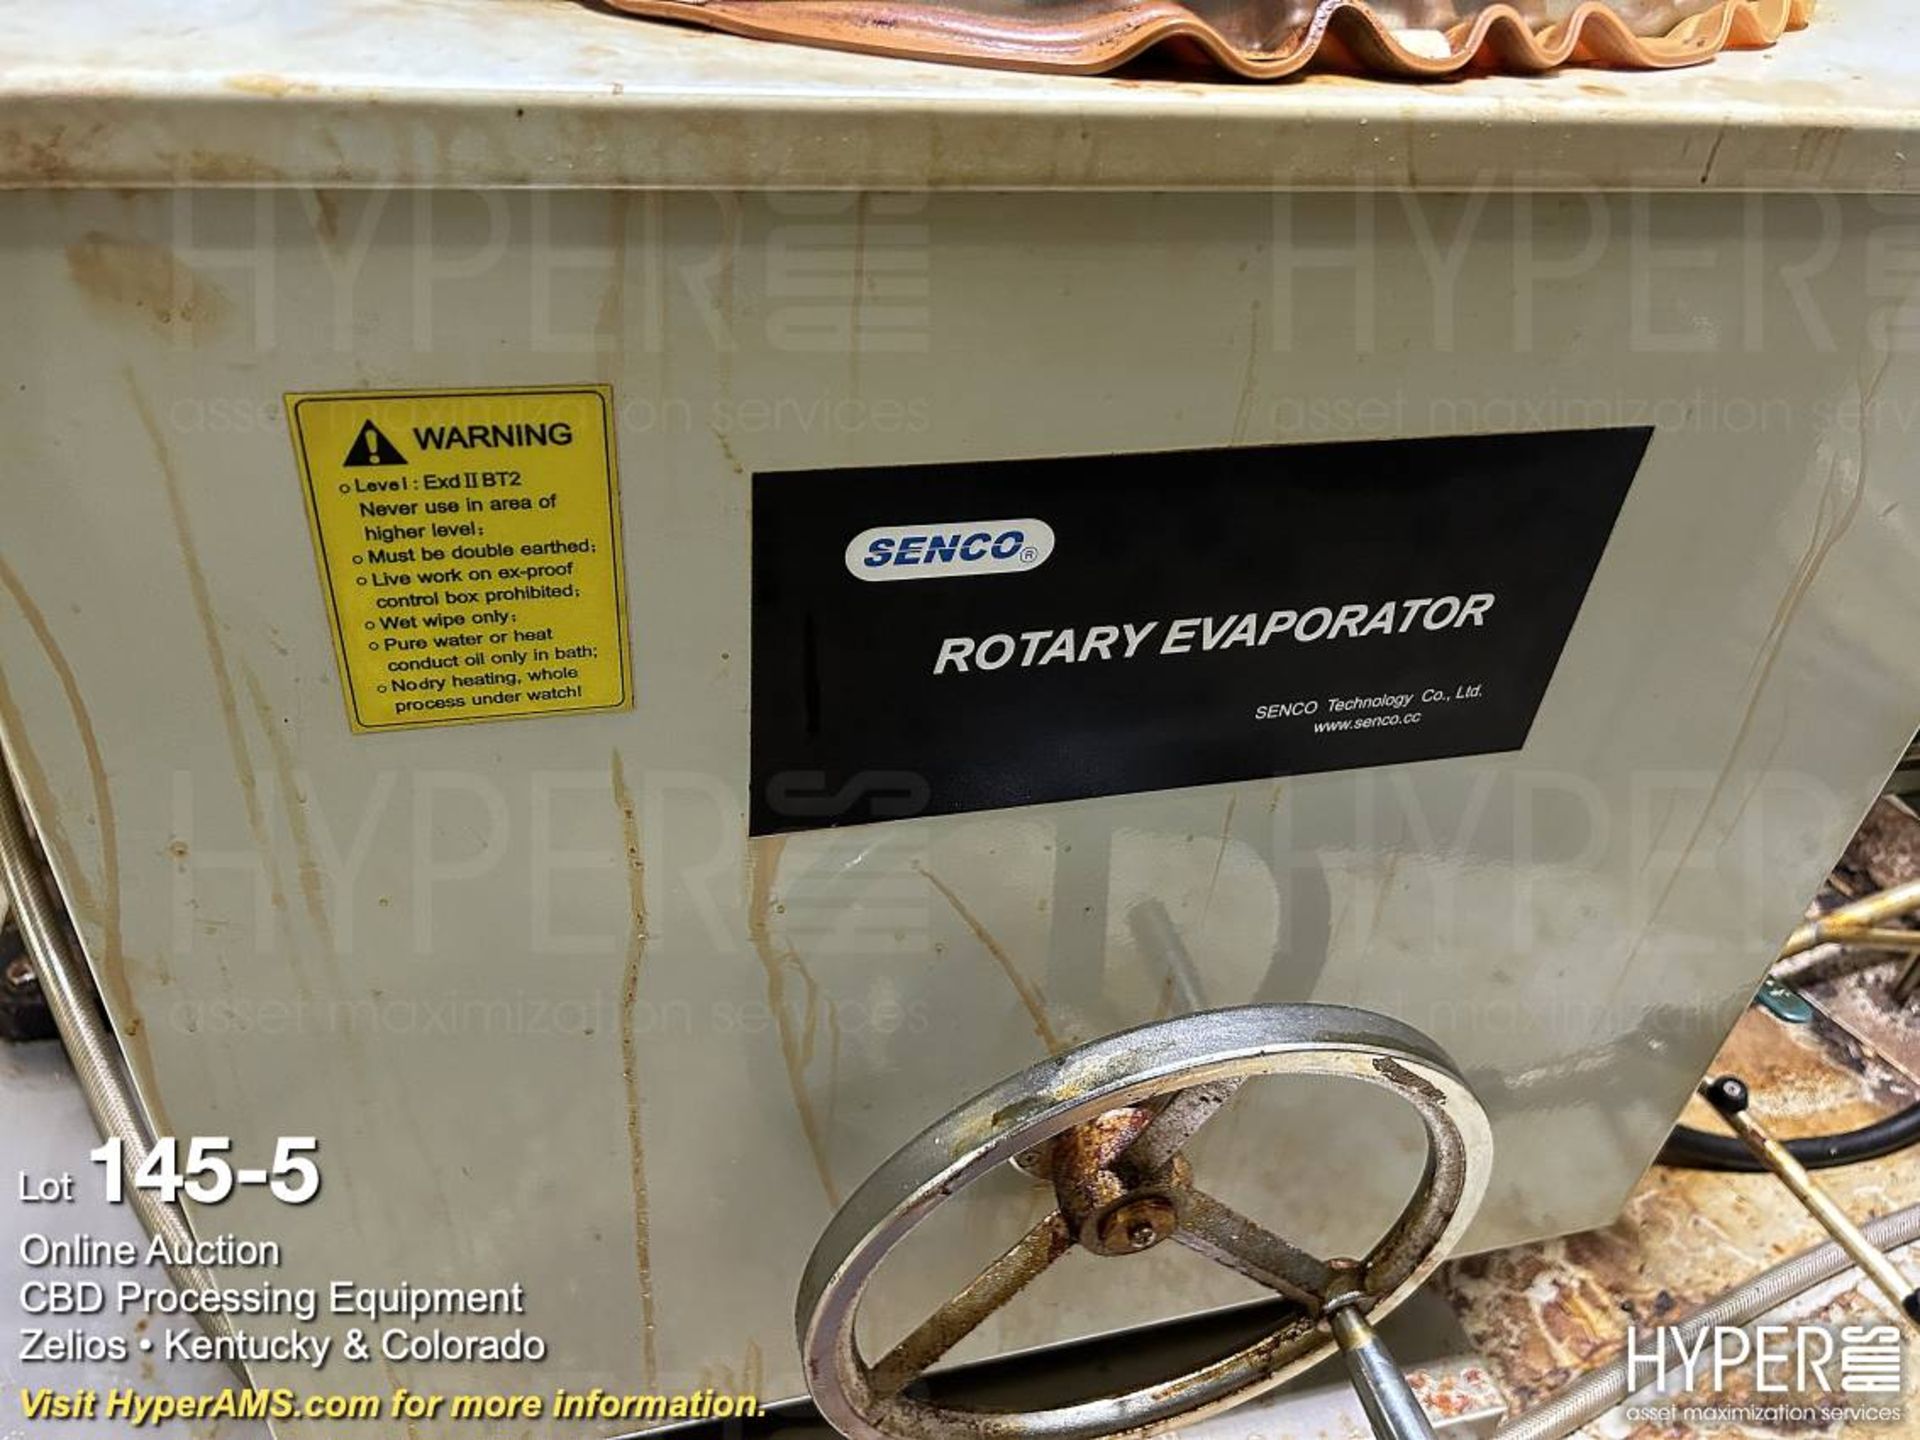 Senco Model R5005KD 50-Liter Rotary Evaporator, S/ - Image 5 of 8